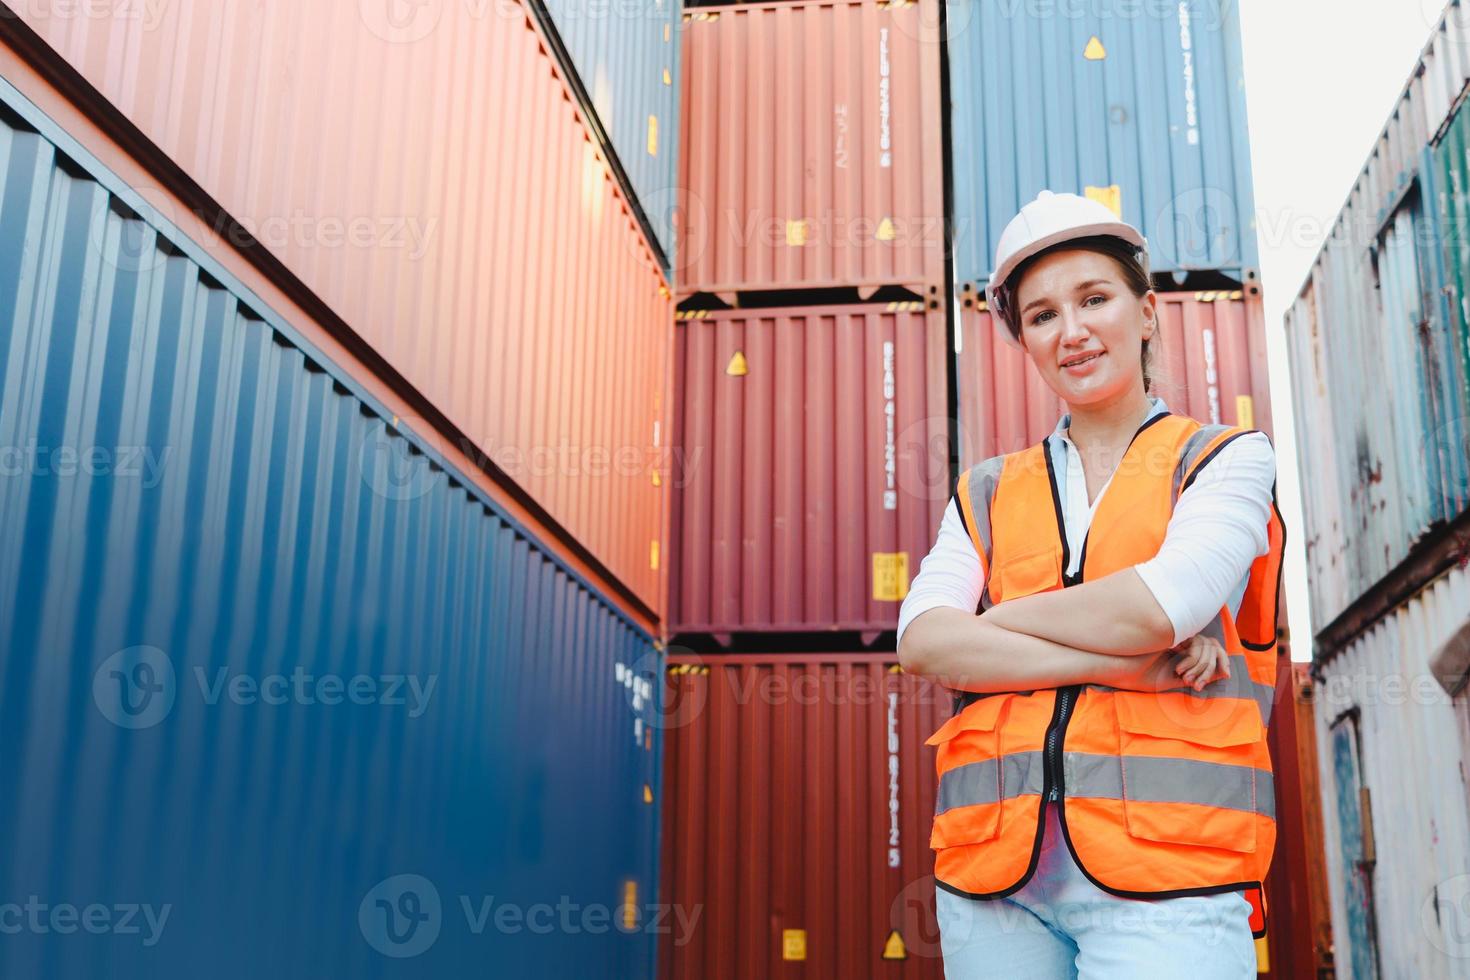 portret van gelukkig lachende jonge mooie vrouw ingenieur baas met blond haar dragen veiligheidsvest en helm, staande met vertrouwen arm gekruist op logistieke vrachtcontainer werf. foto